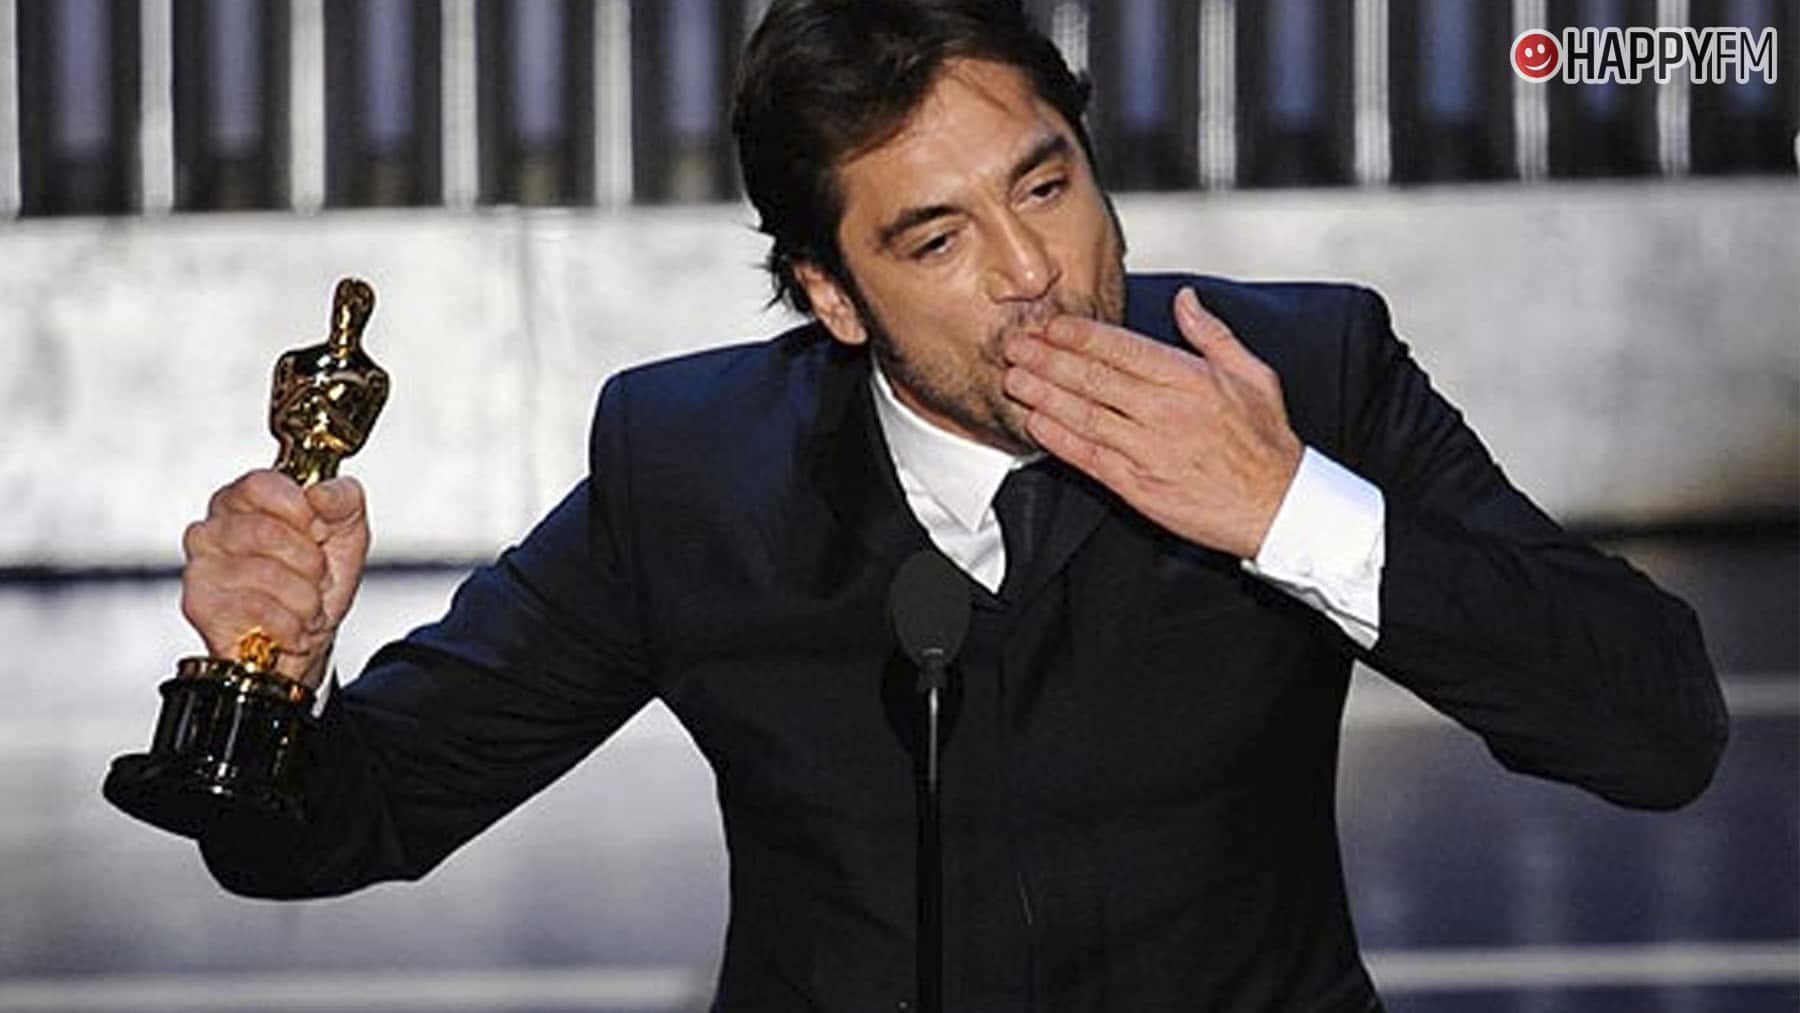 ‘Oscars 2022’: cómo ver en directo en España (tv y online), fecha y horarios loading=